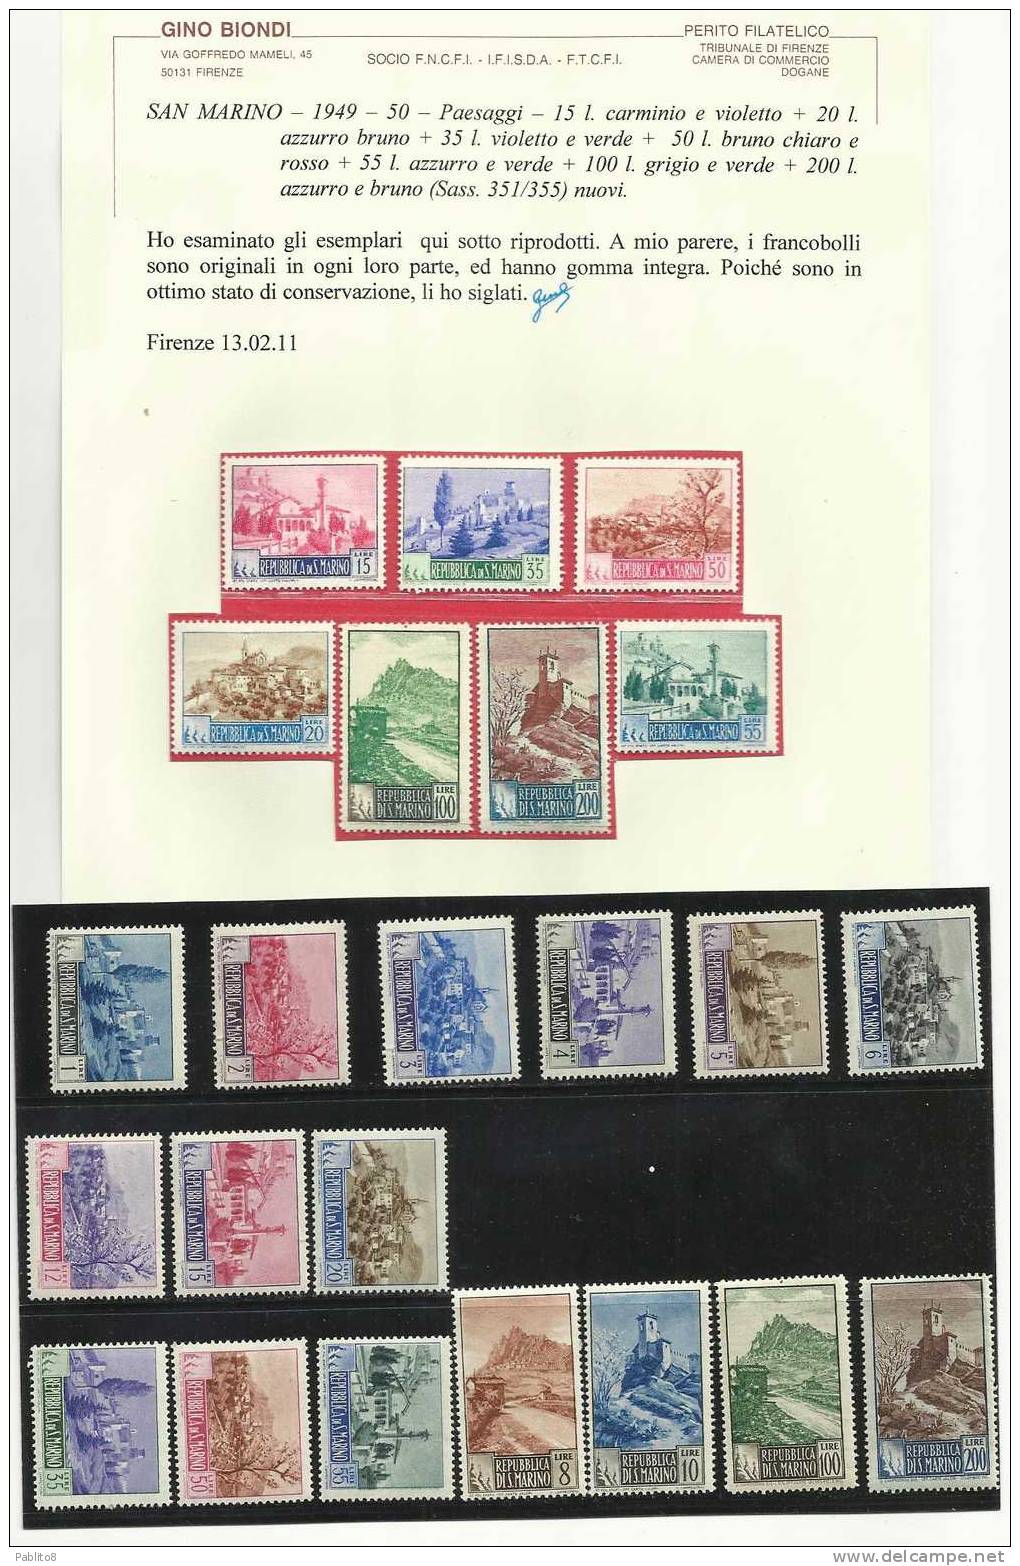 SAN MARINO 1949 PAESAGGI SERIE COMPLETA MNH CON CERTIFICATO - Unused Stamps